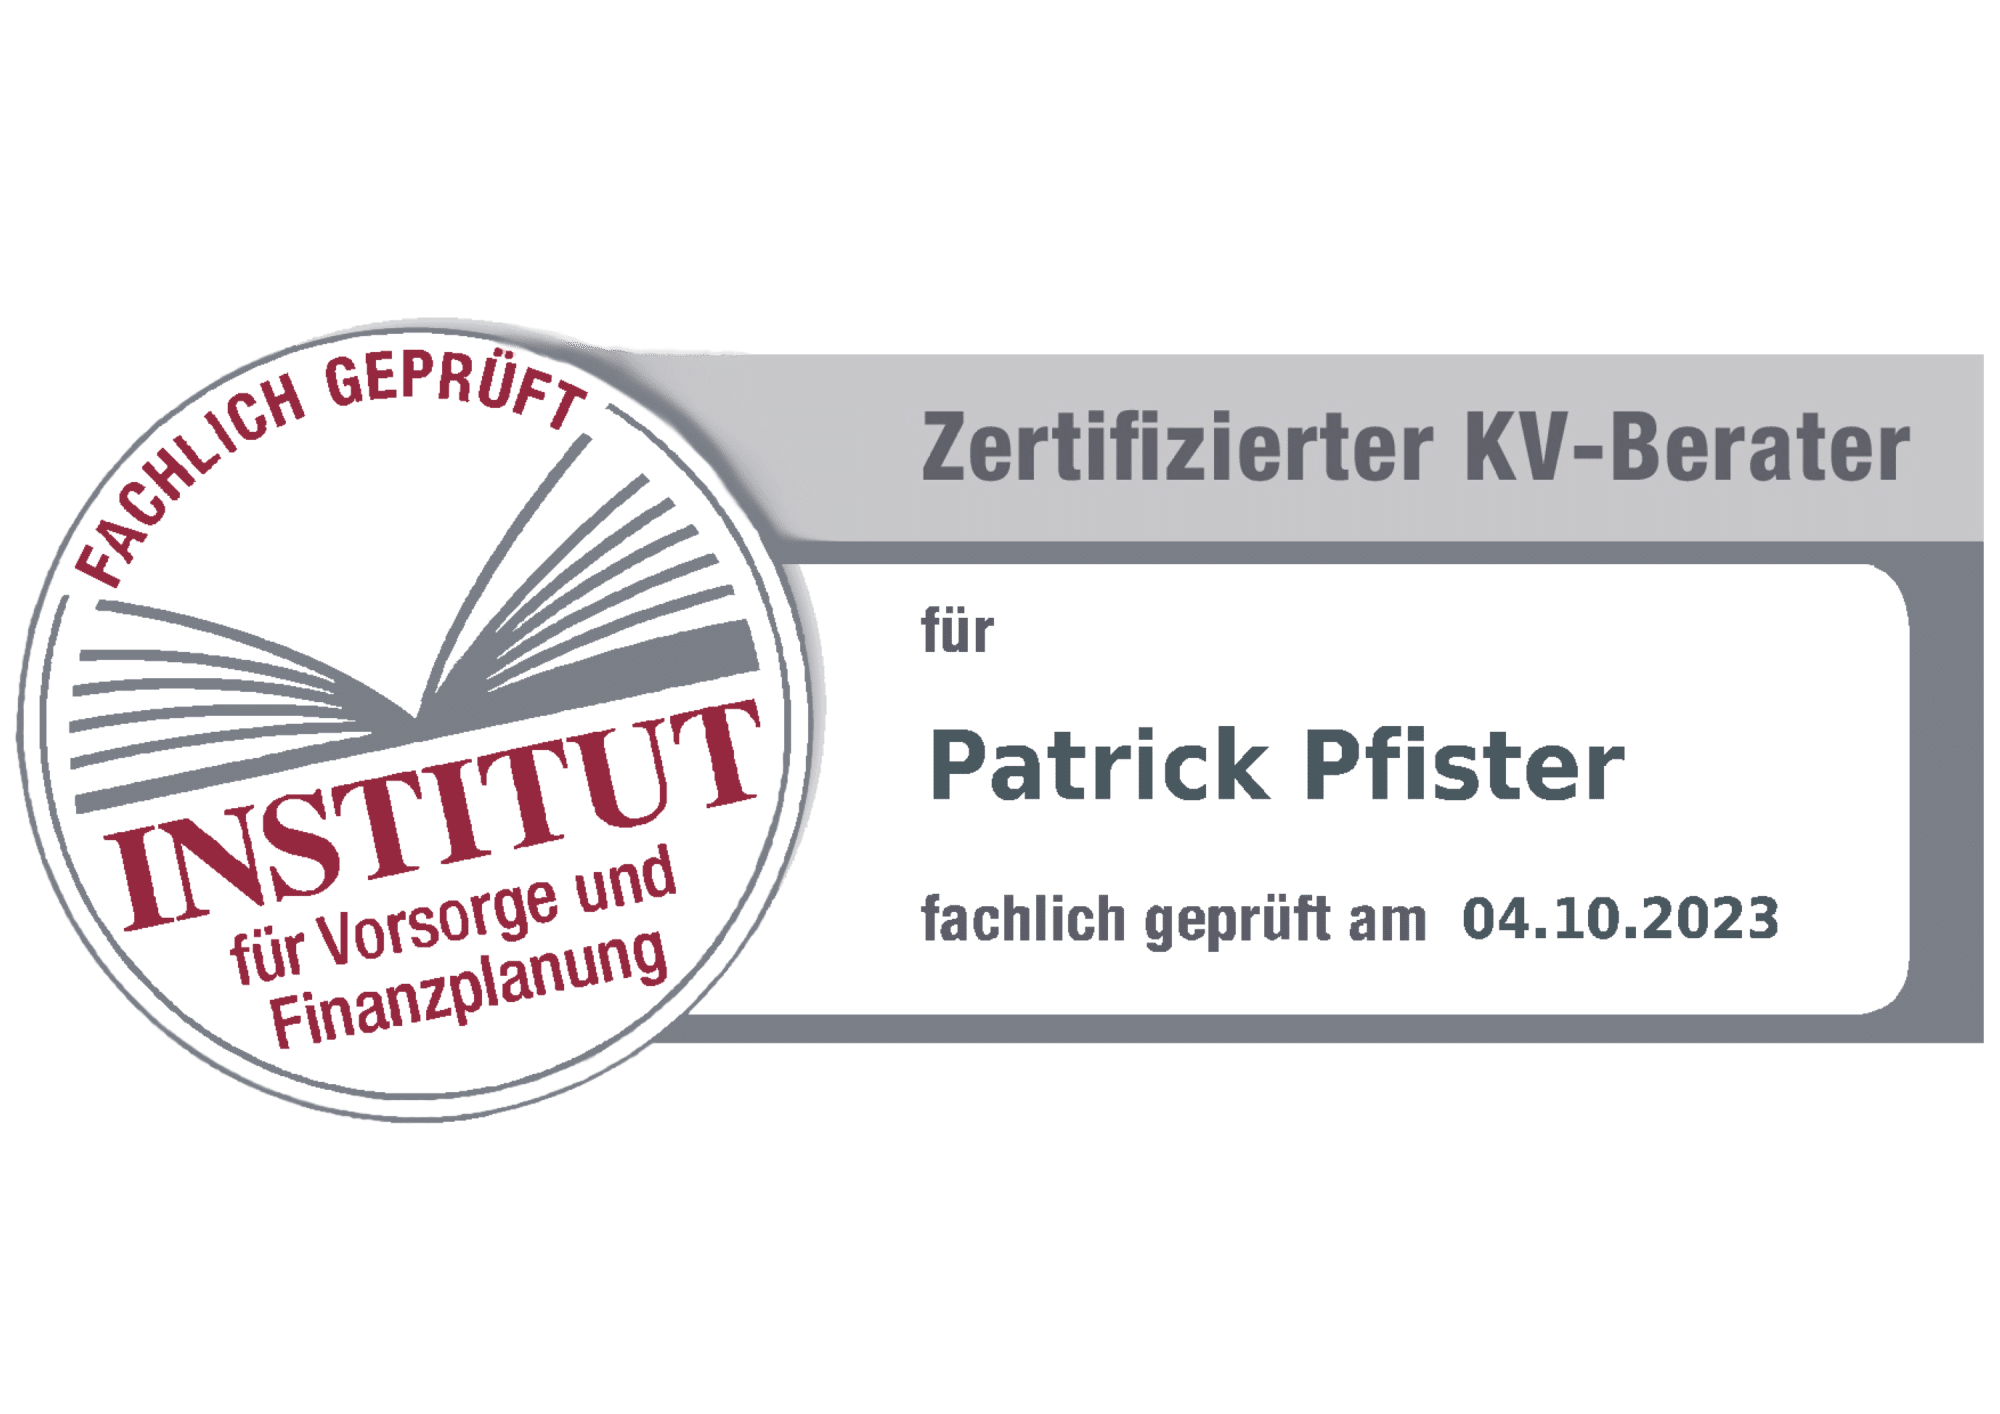 Pfister Patrick KV Berater transparent